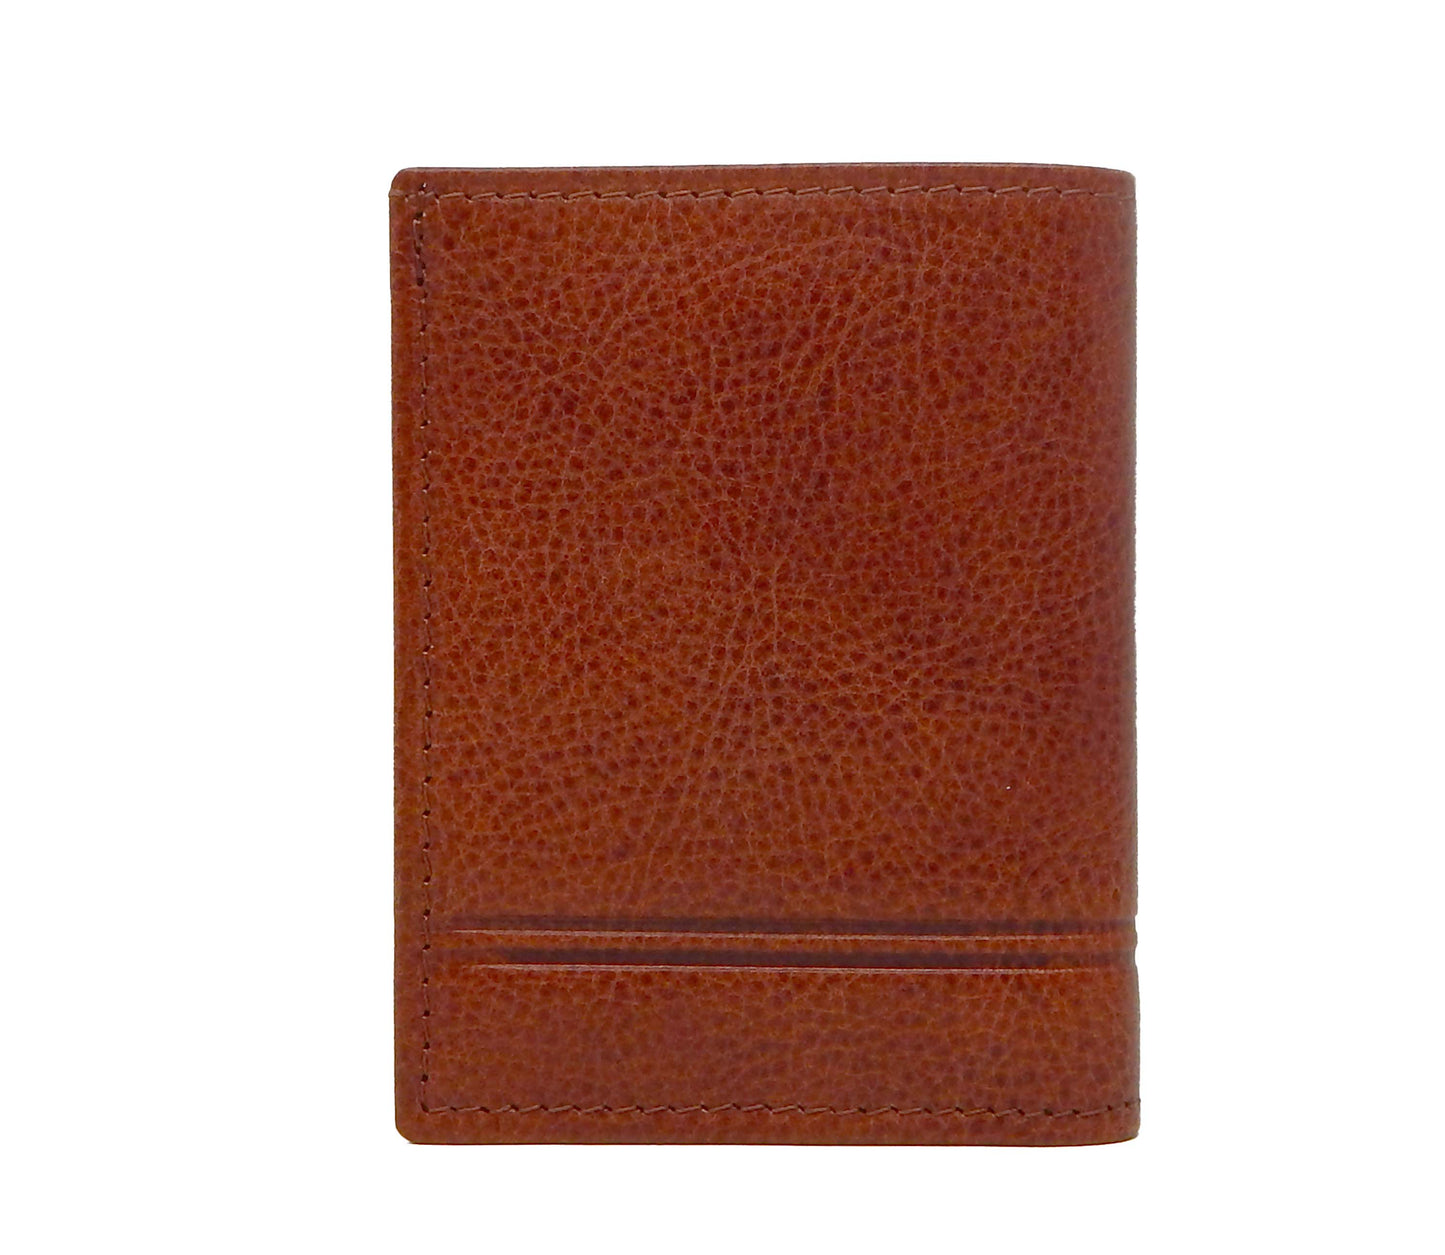 Cavalinho Men's Bifold Slim Leather Wallet - SaddleBrown - 28160533.13.99_3